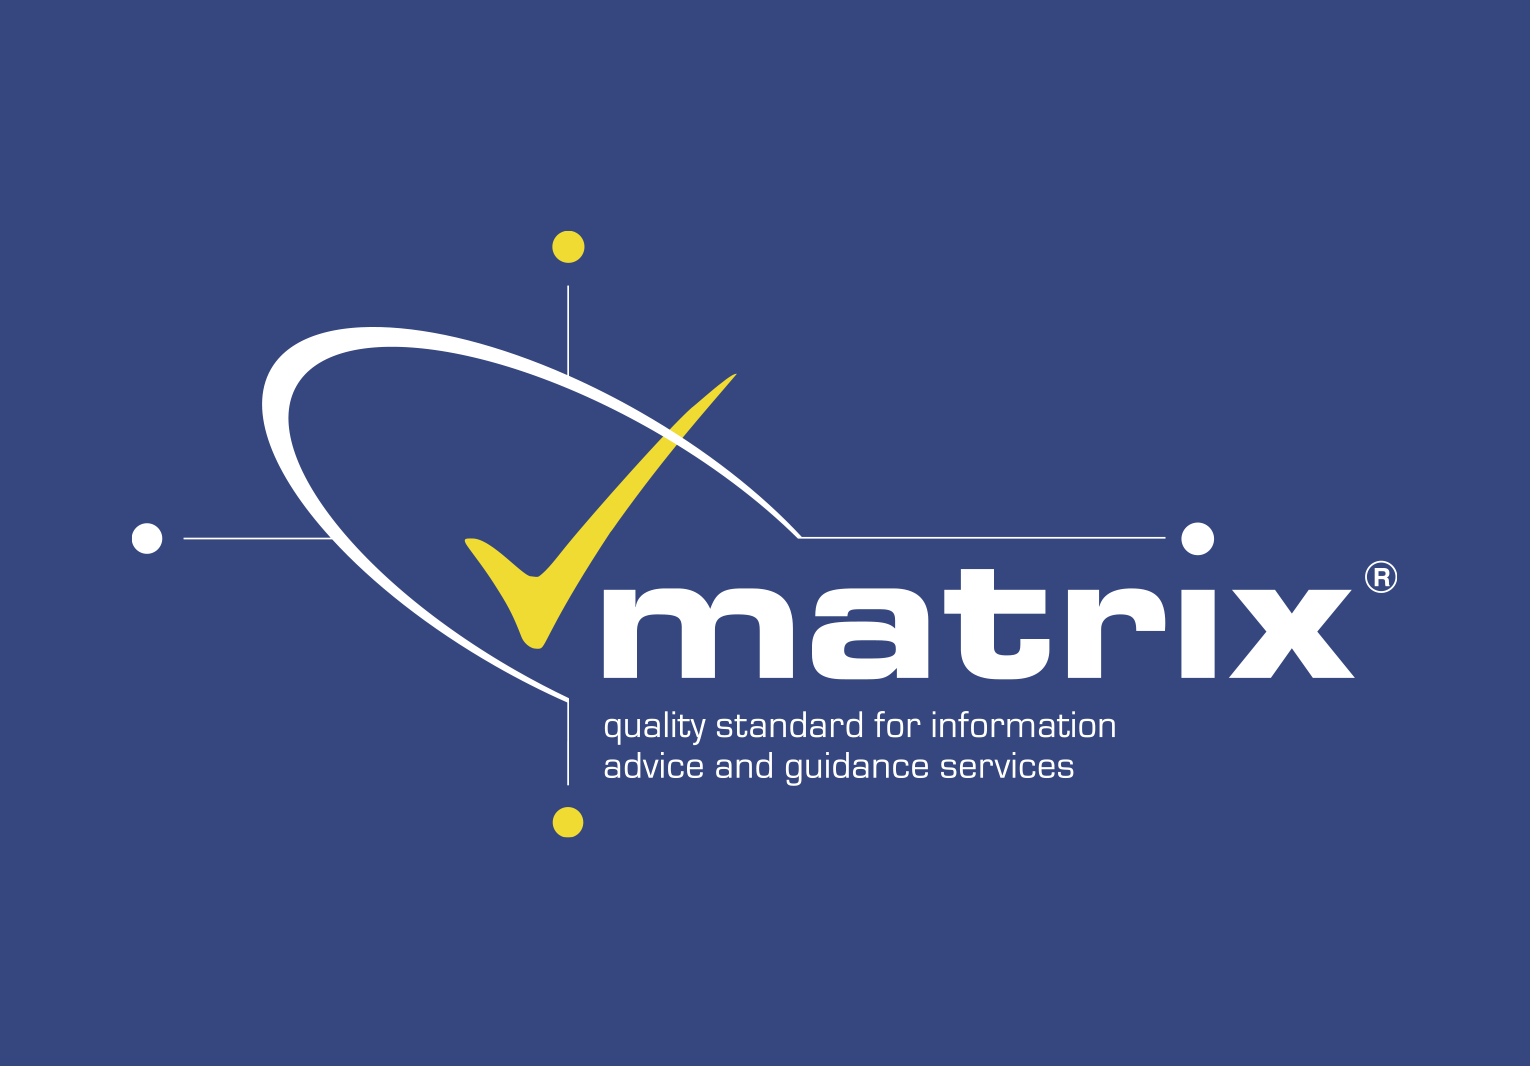 (c) Matrixstandard.com